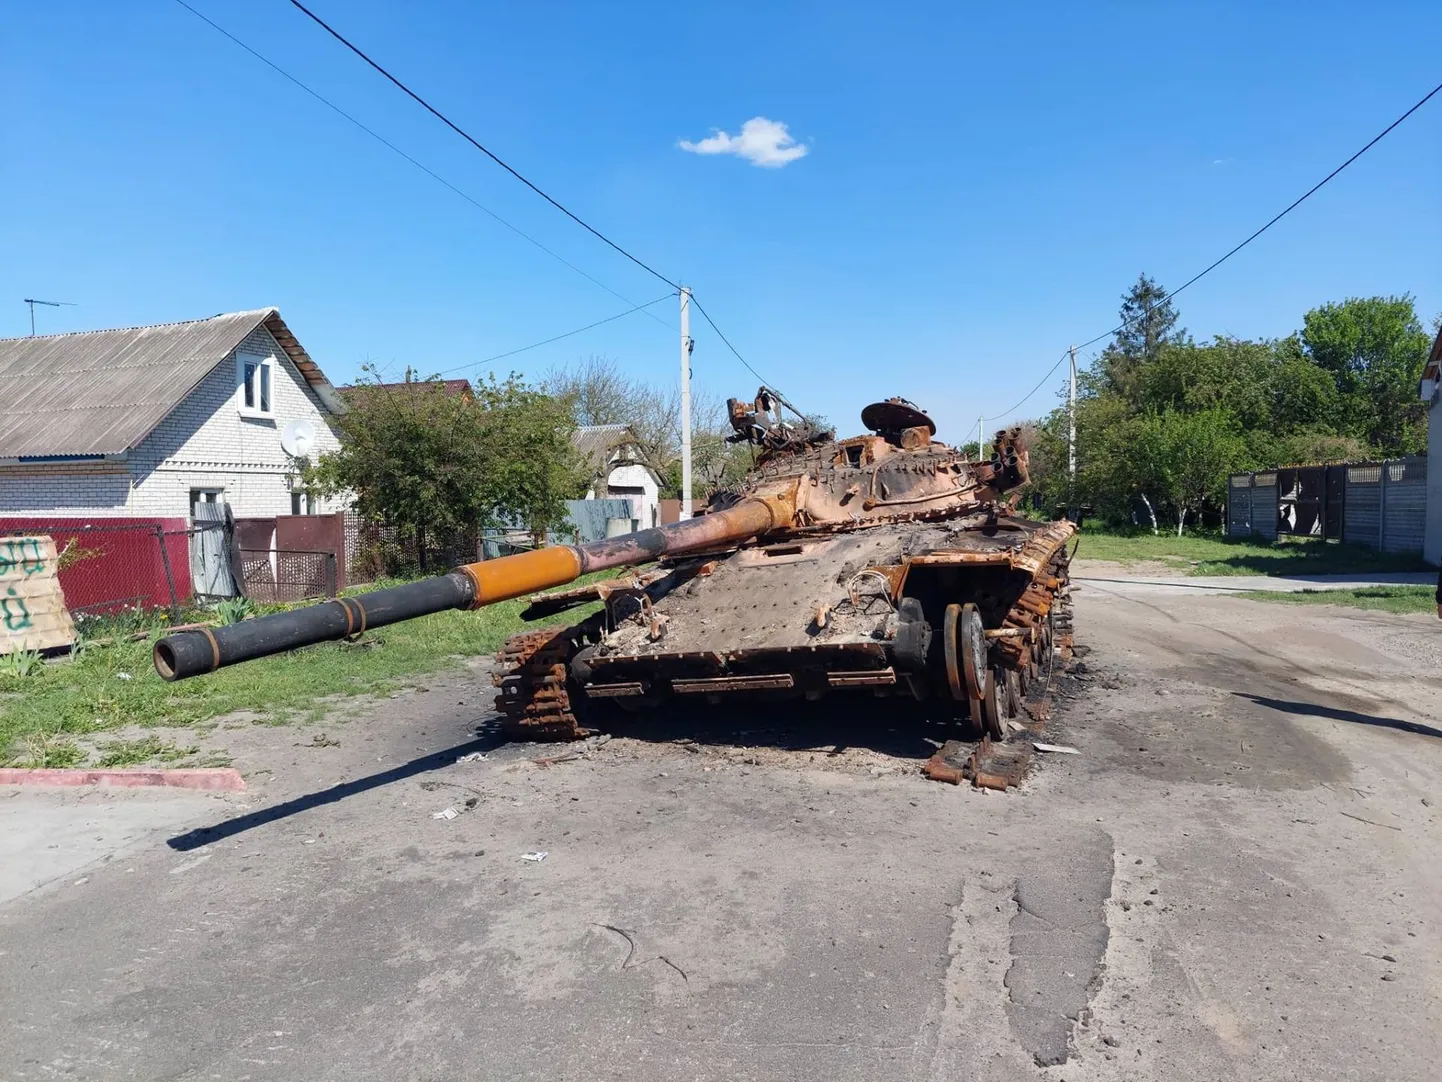 Hüljatud tank Vene-Ukraina sõja rindejoonel.